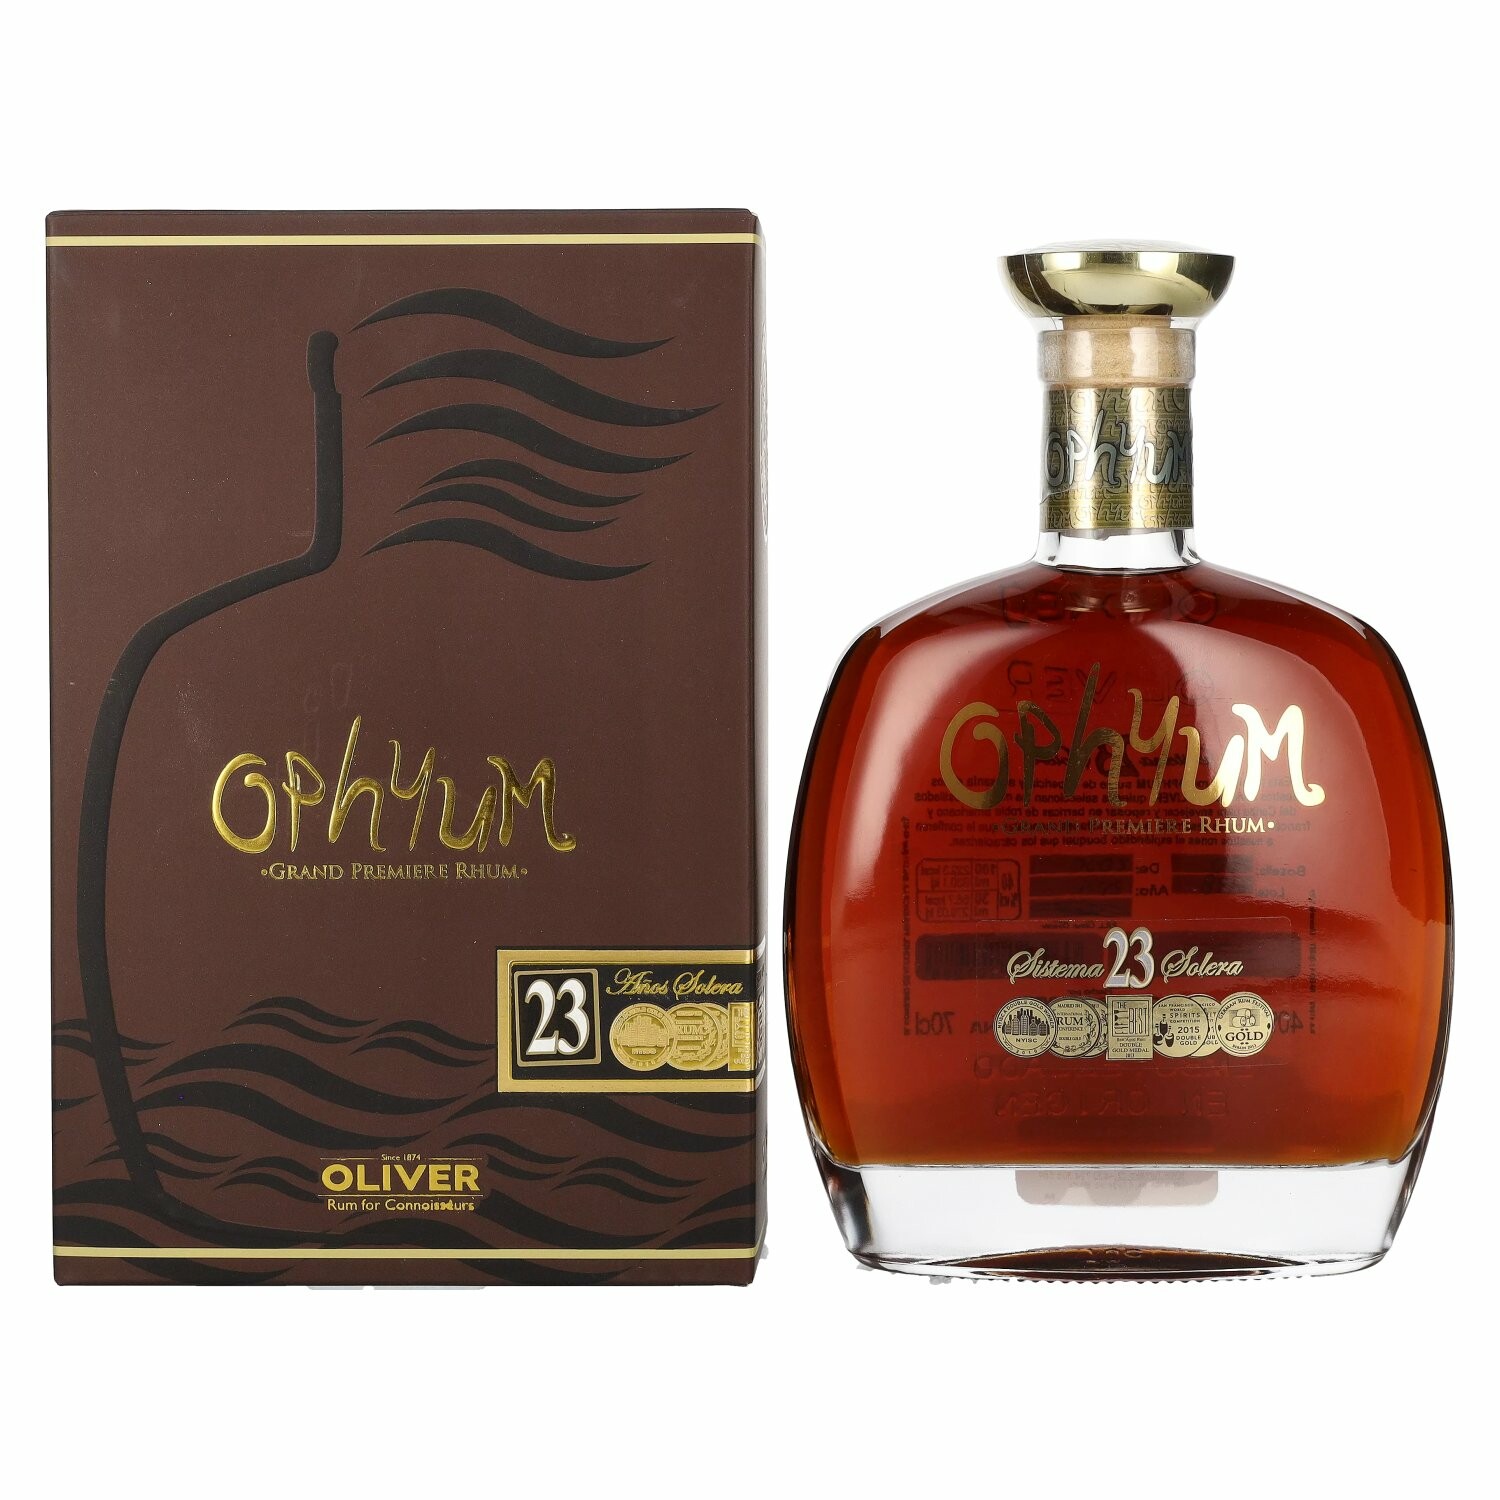 Ophyum 23 Años Solera Grand Premiere Rhum 40% Vol. 0,7l in Giftbox